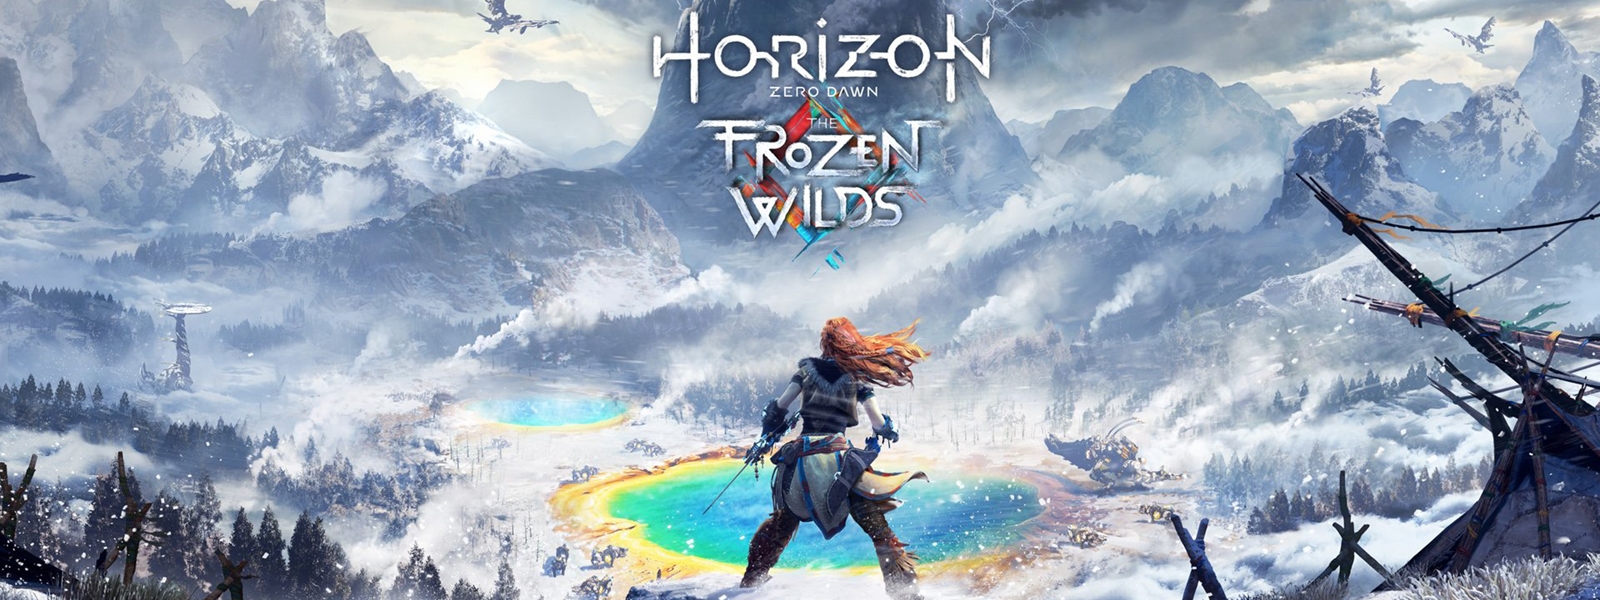 Horizon Zero Dawn The Frozen Wilds: как попасть в новую область?